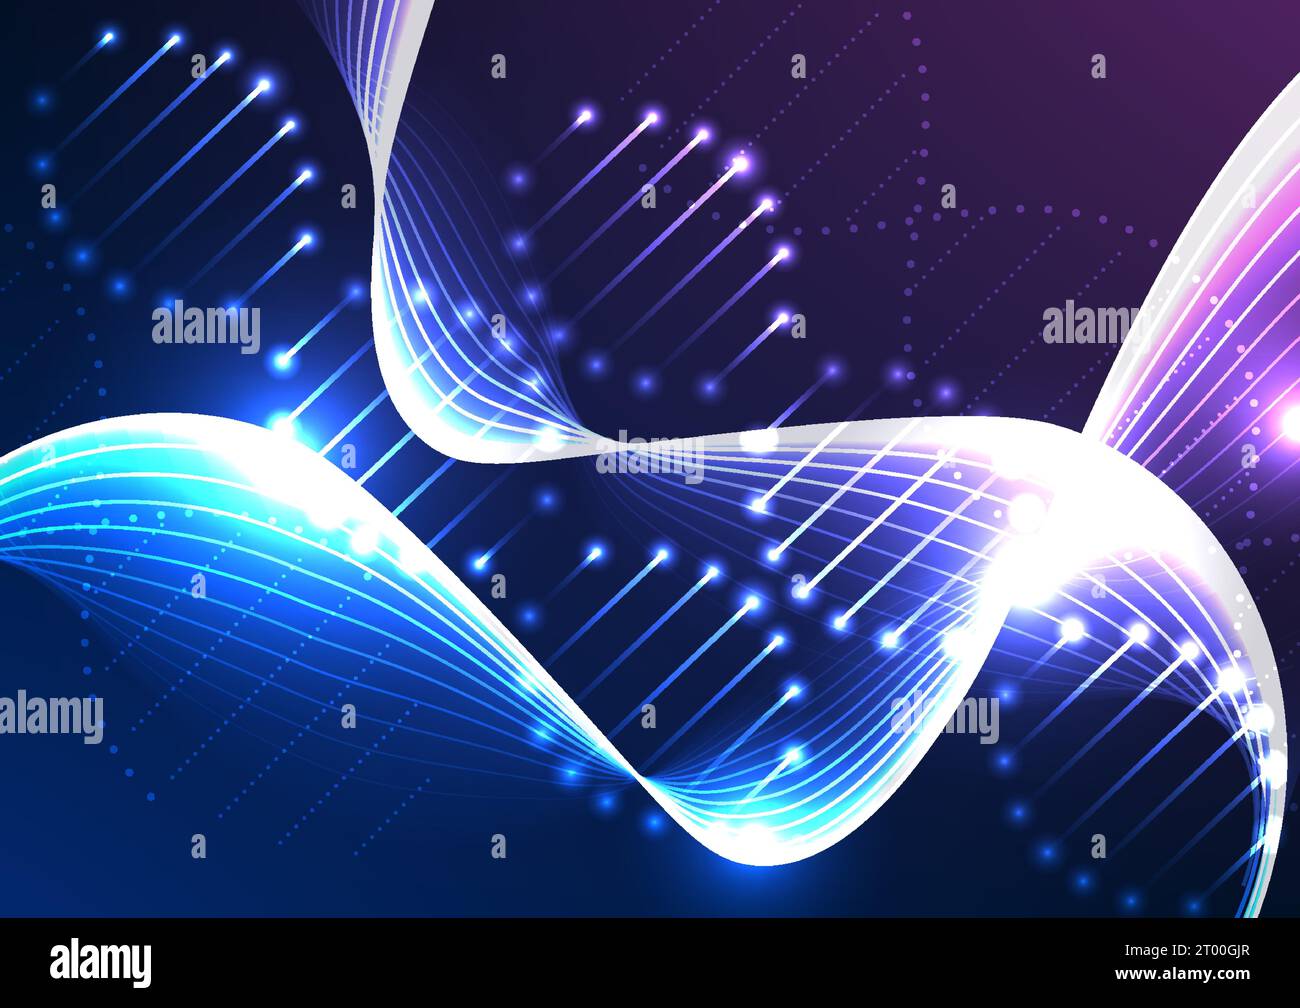 DNA-thematischer medizinischer Hintergrund mit beleuchteten Strängen, die die technologischen Fortschritte der modernen Medizin hervorheben und die Verbindung präsentieren Stock Vektor